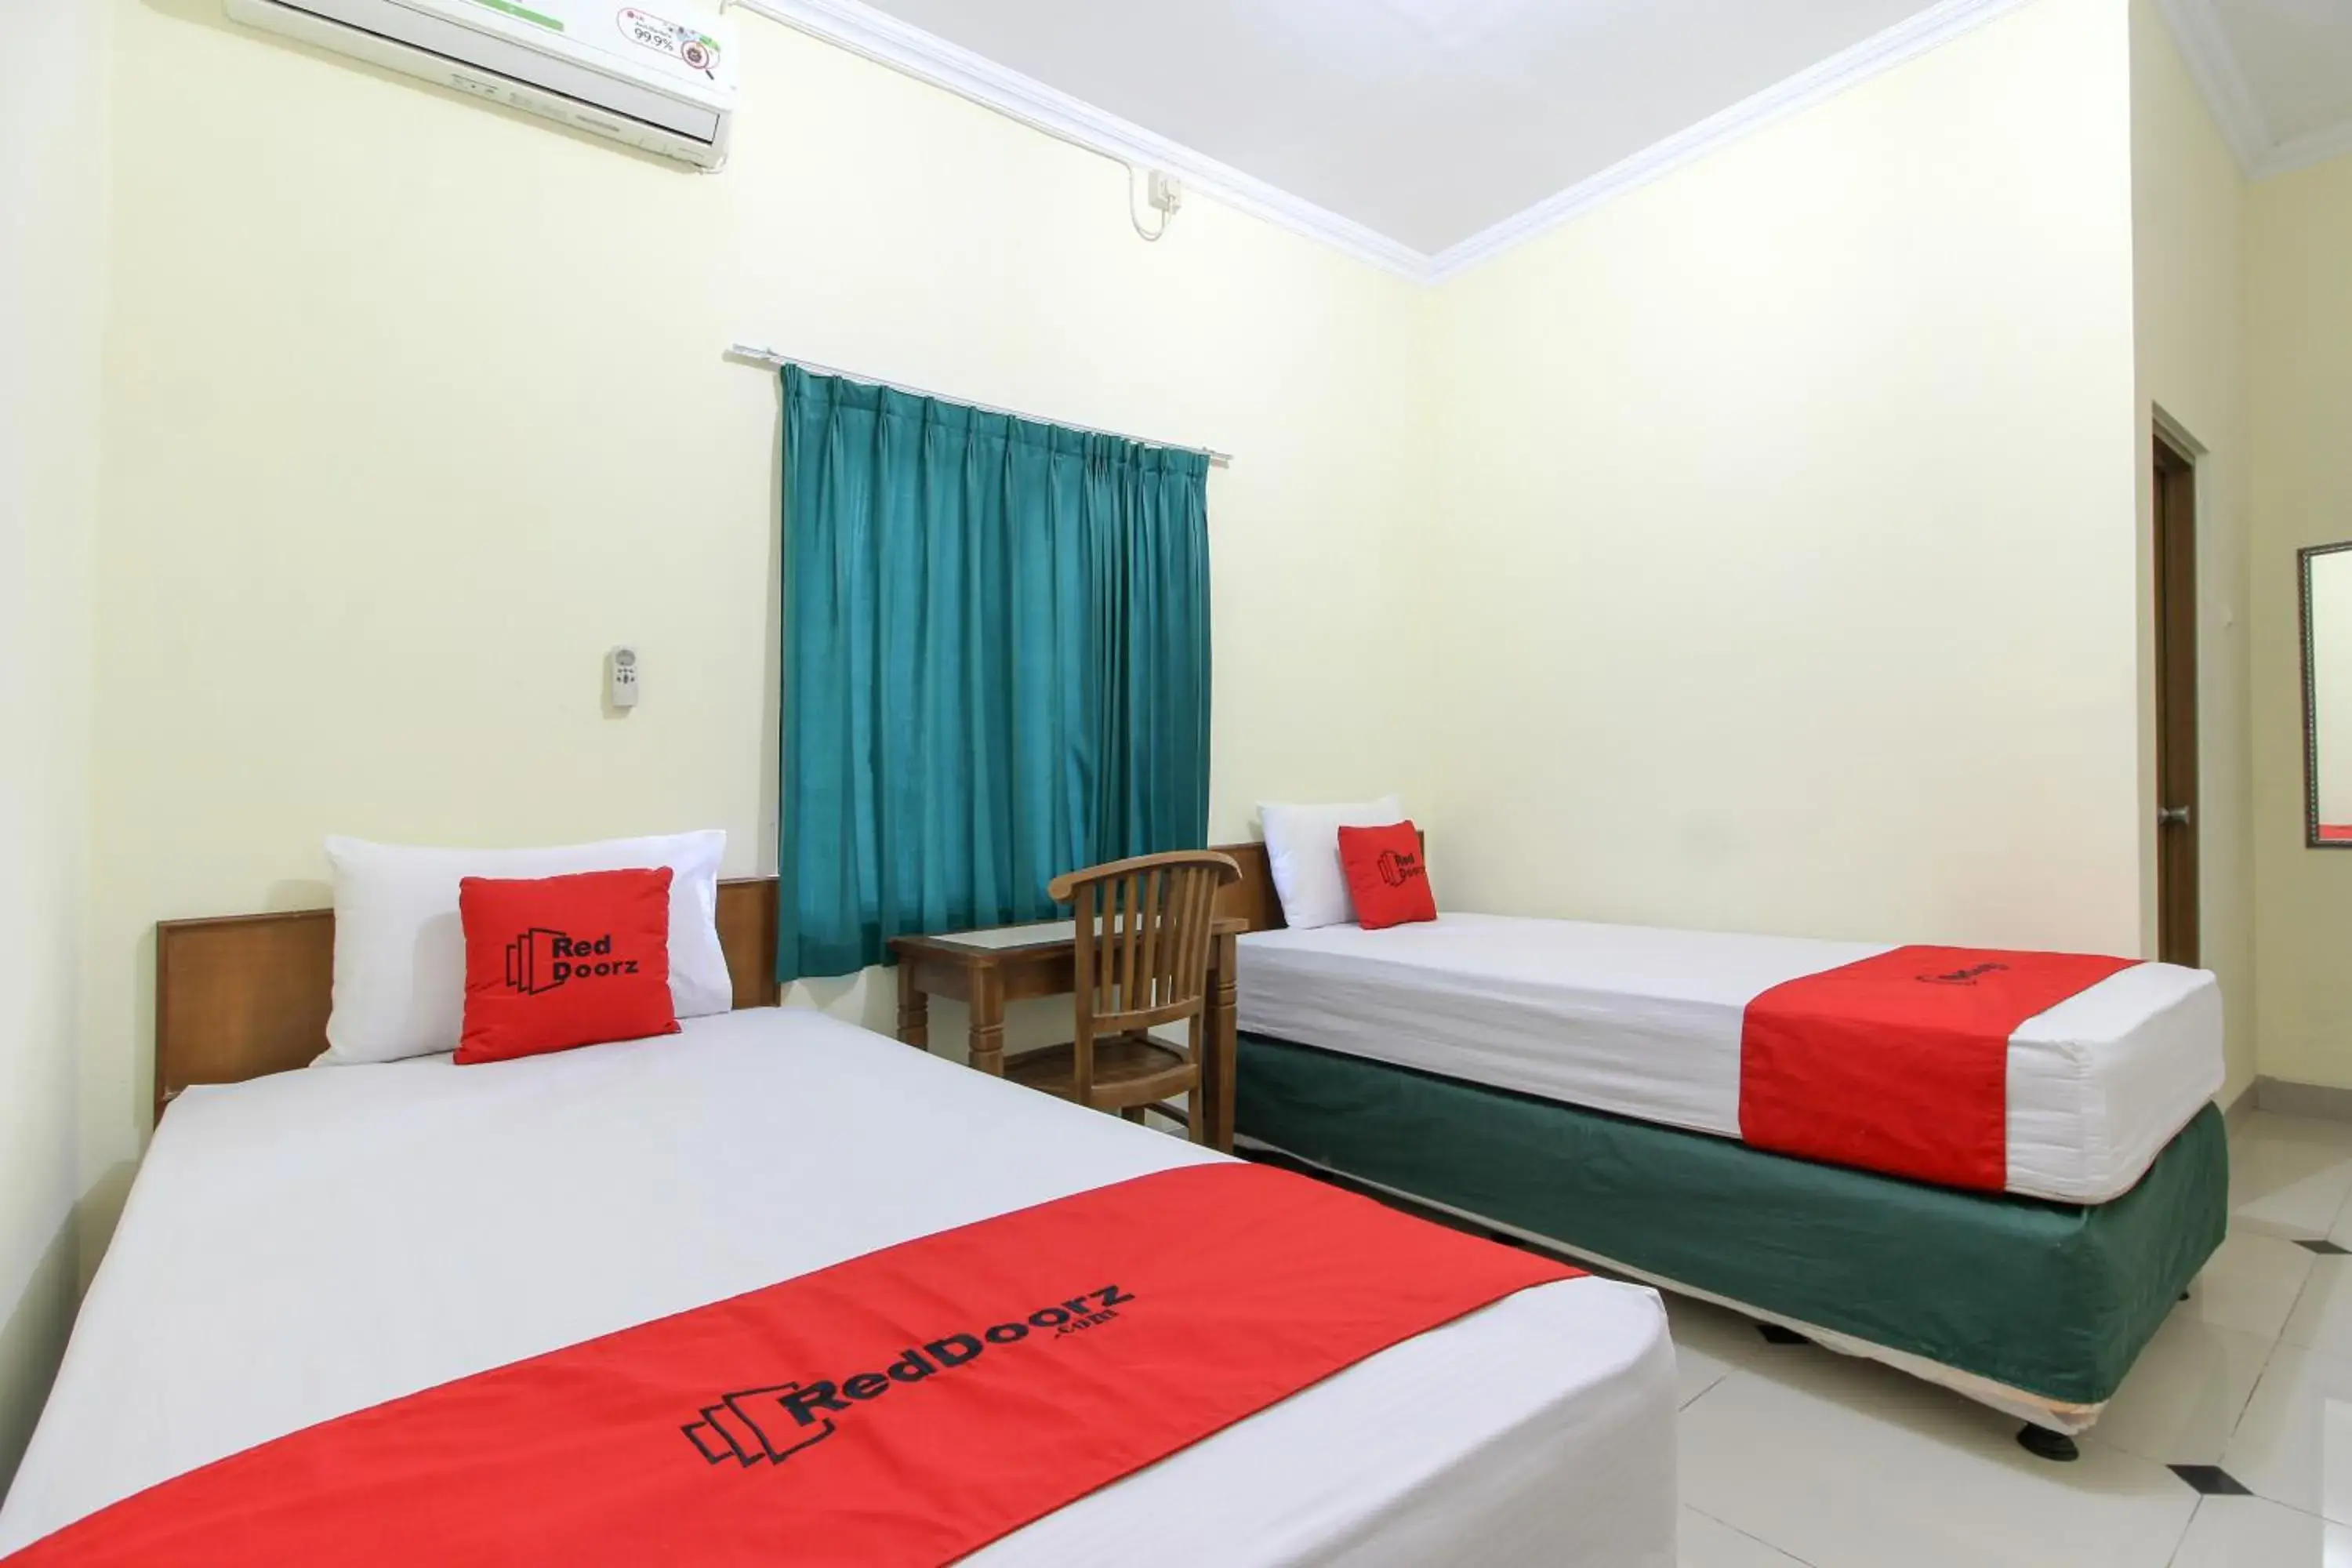 Bedroom, Bed in RedDoorz near Rumah Sakit Condong Catur